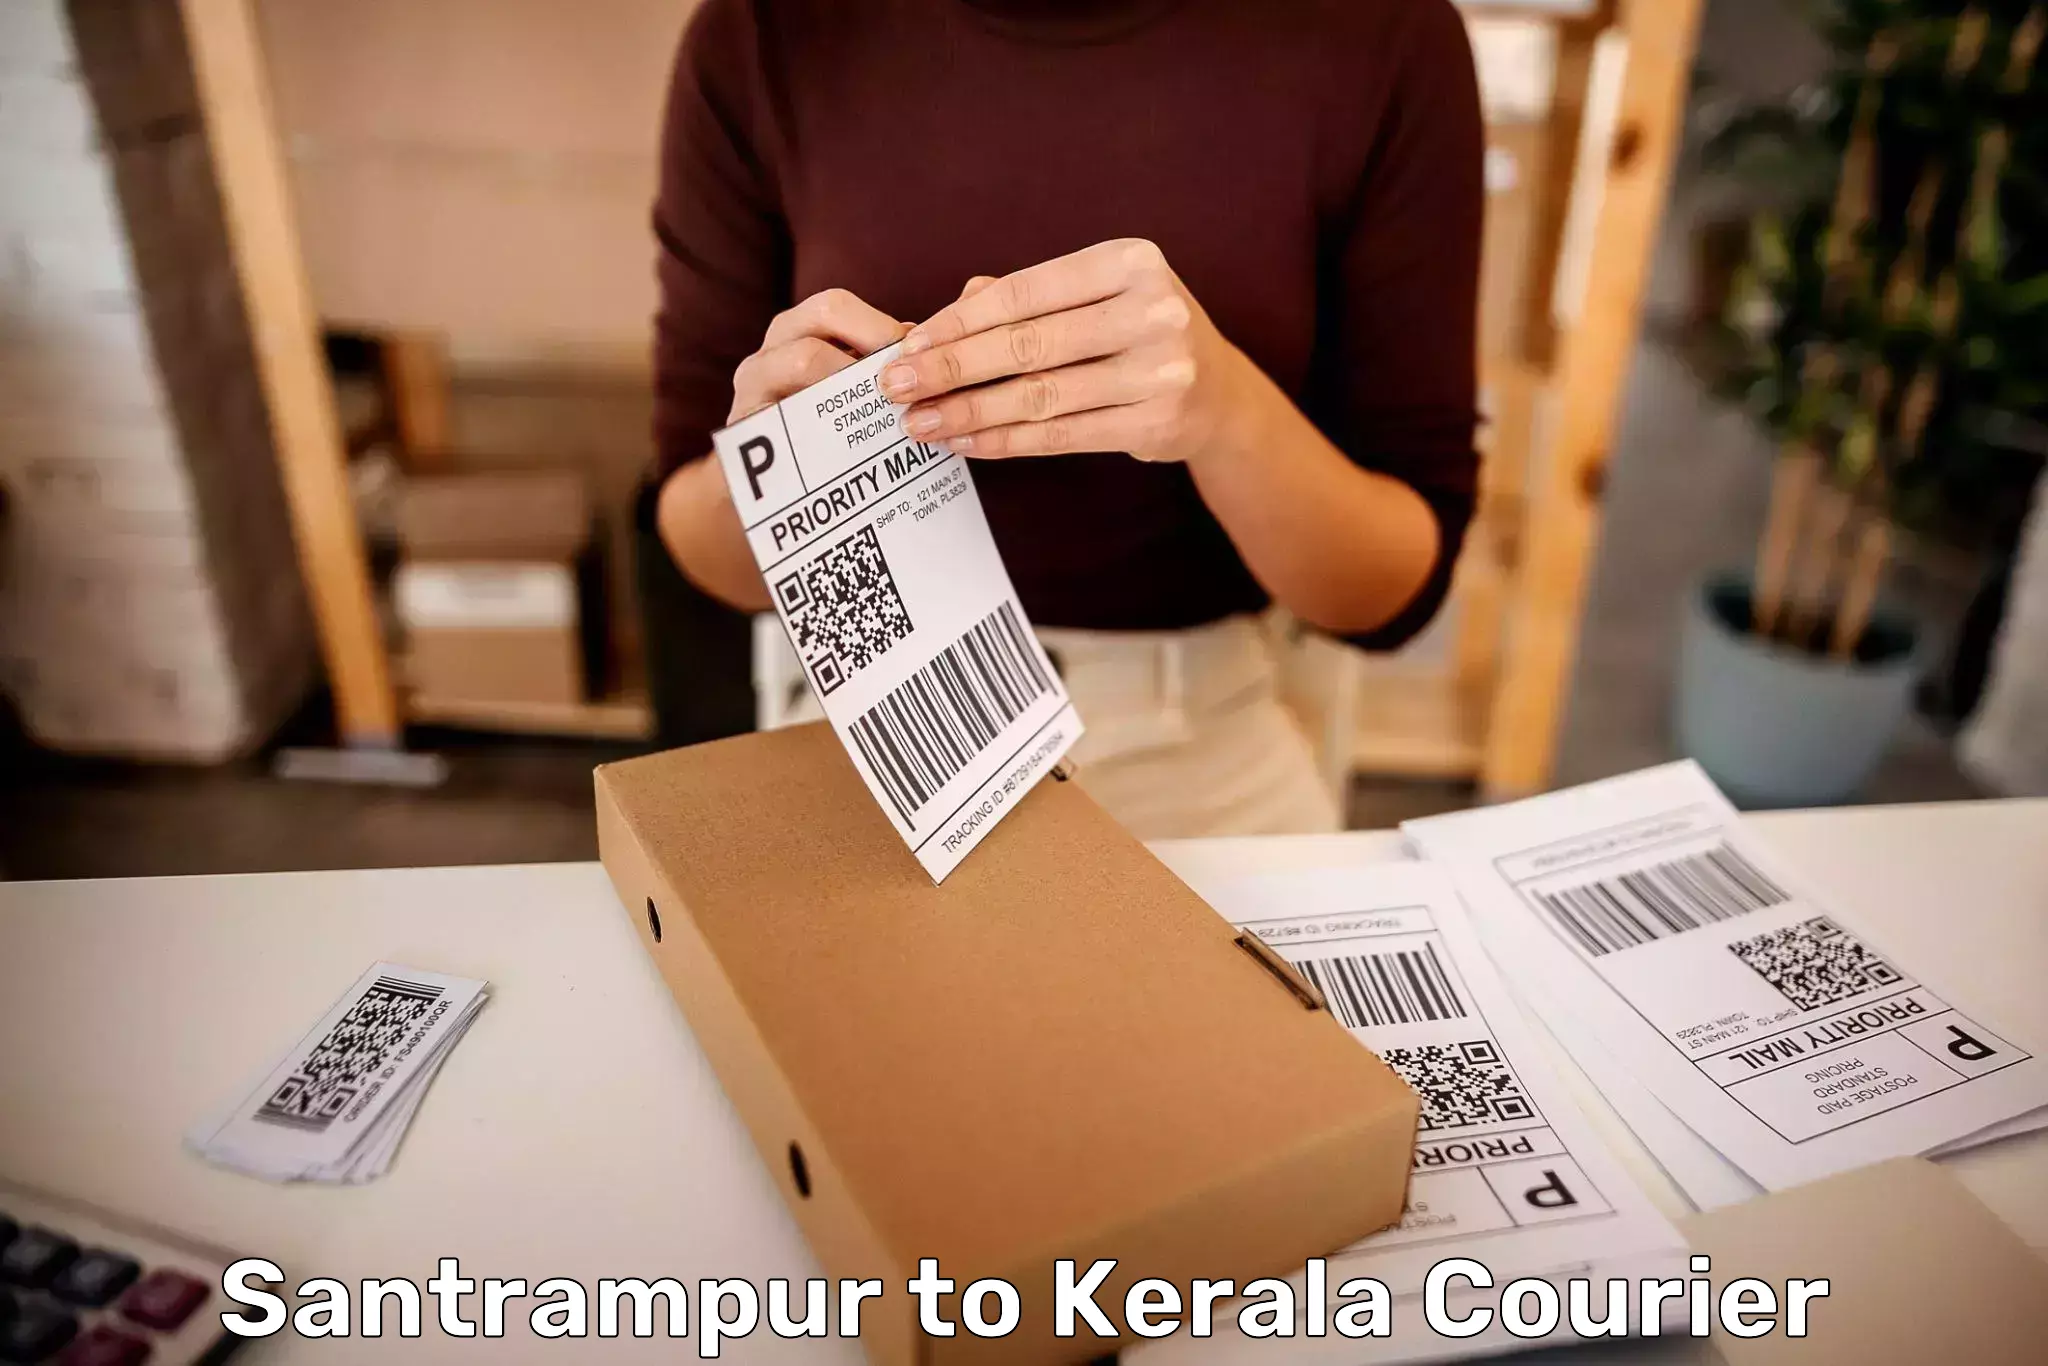 Luggage delivery estimate Santrampur to Cochin Port Kochi